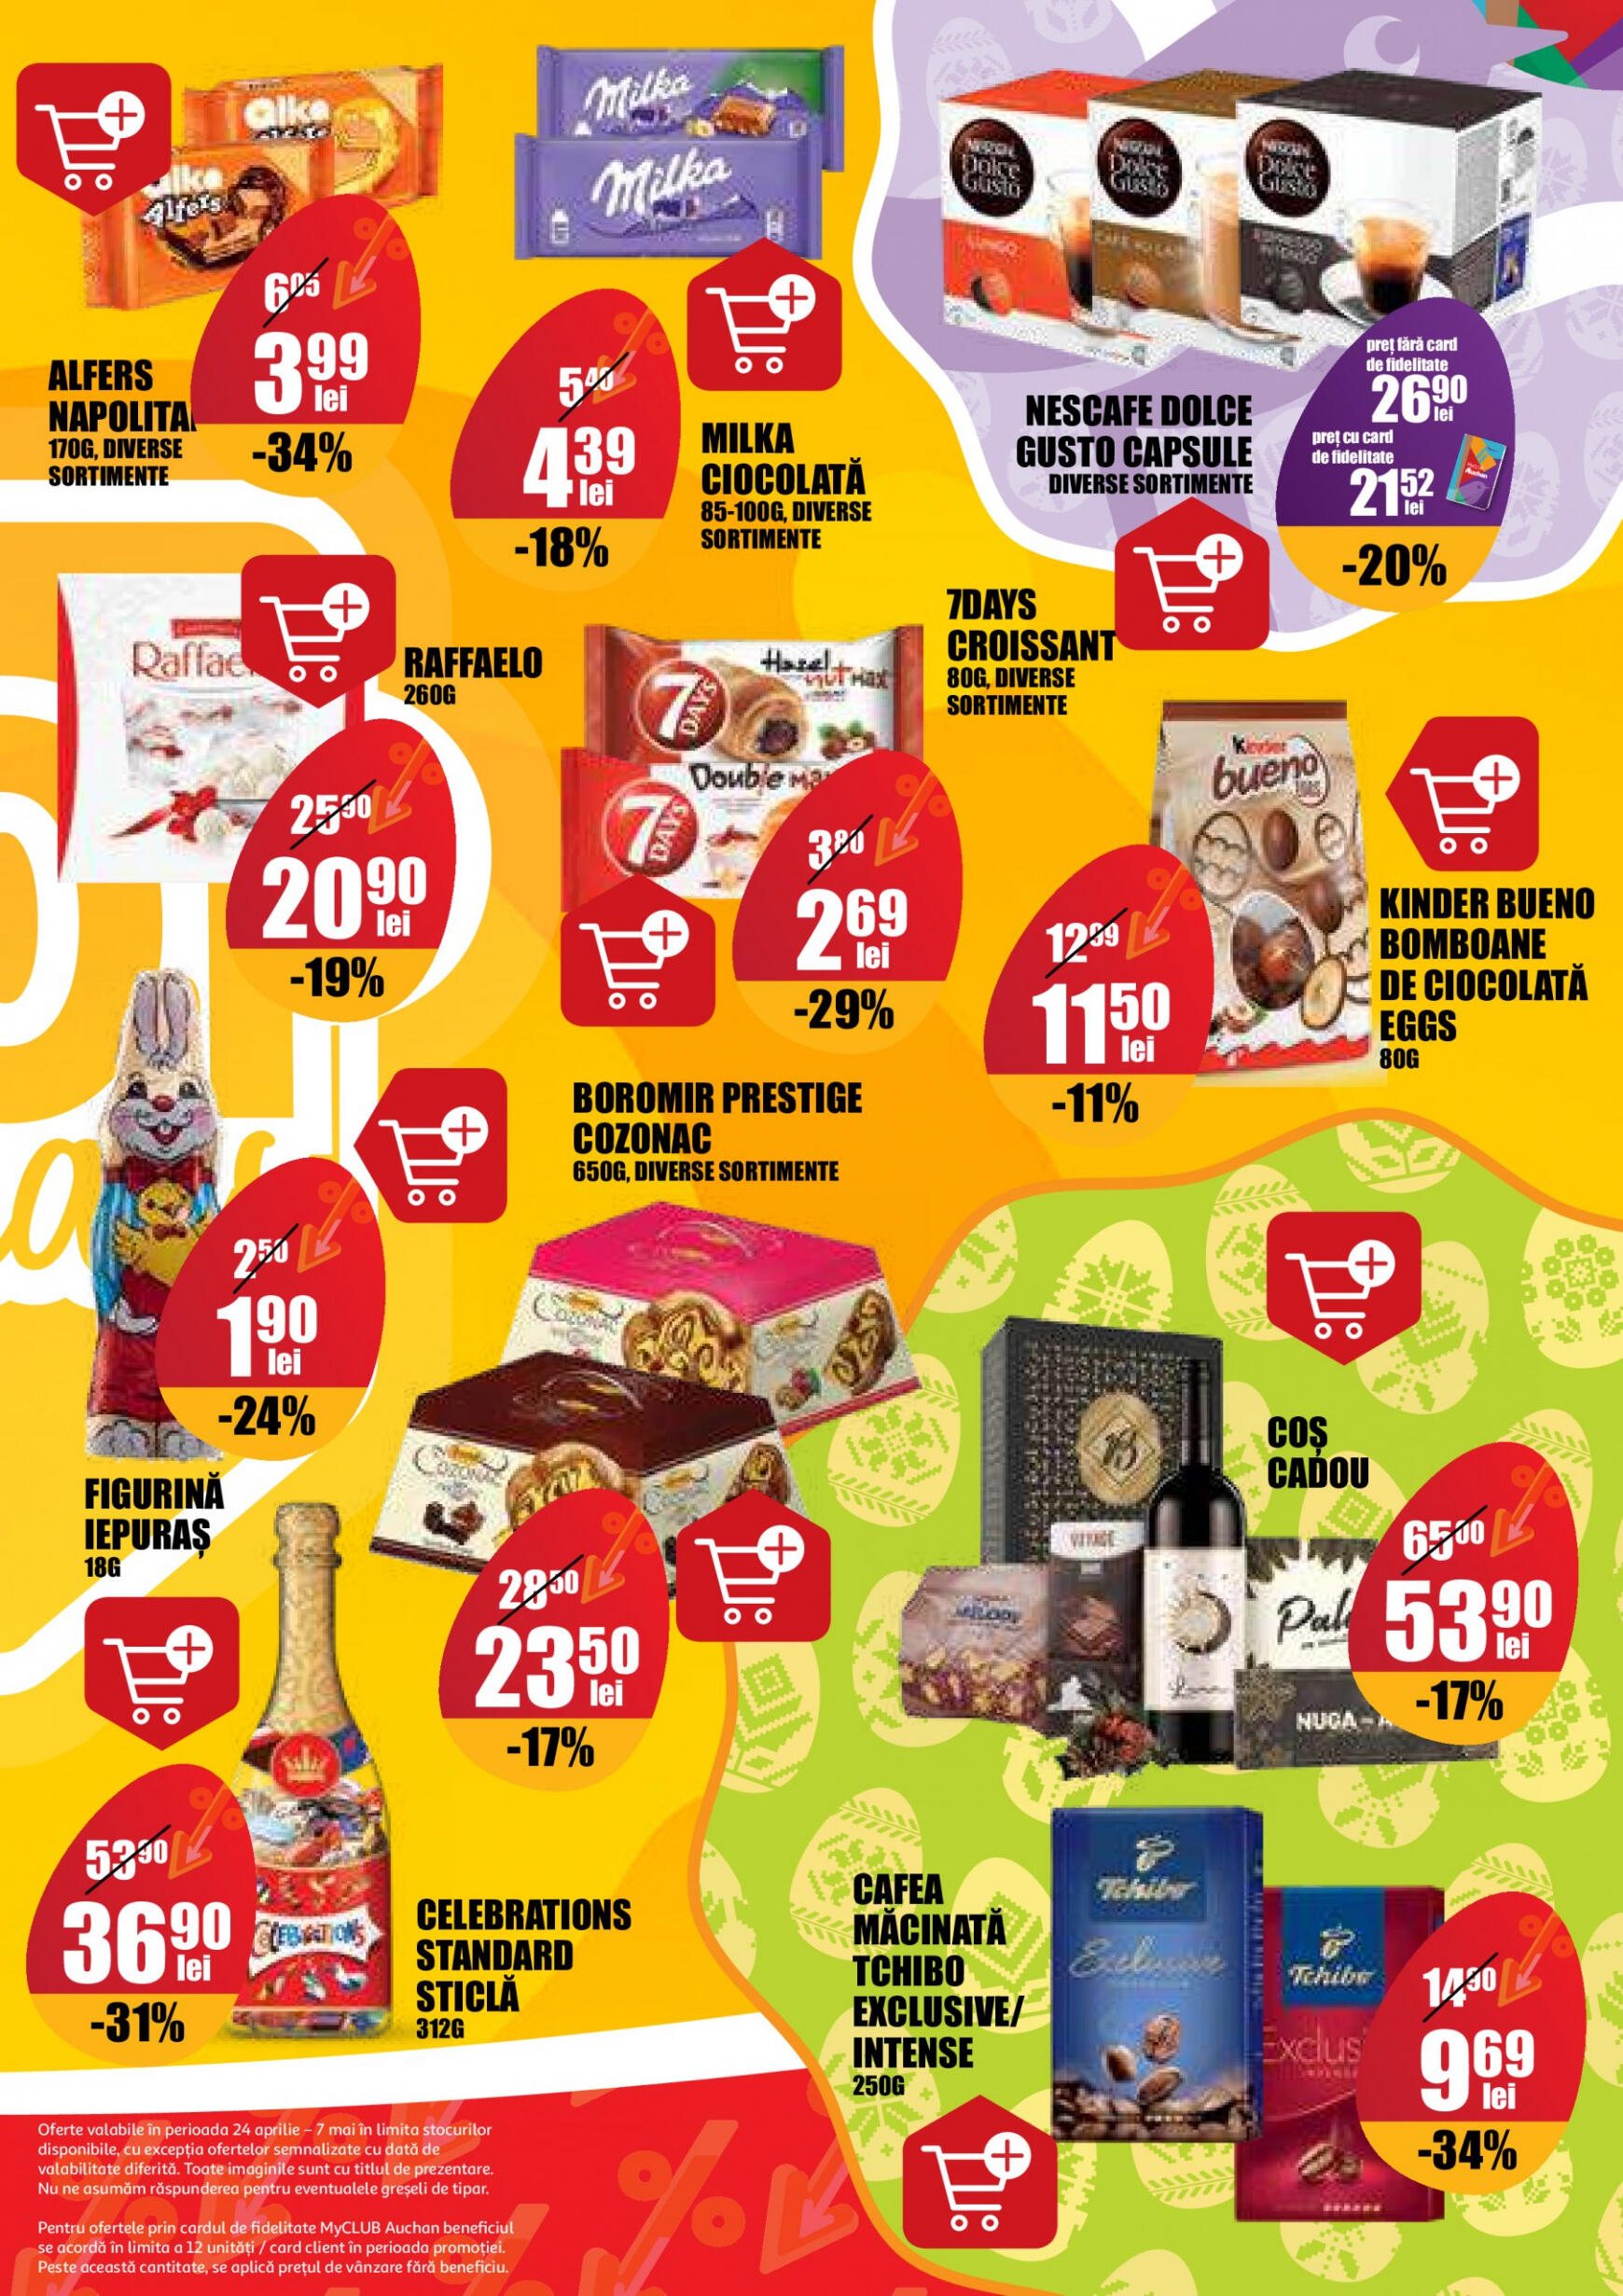 auchan - Catalog nou Auchan 24.04. - 07.05. - page: 15